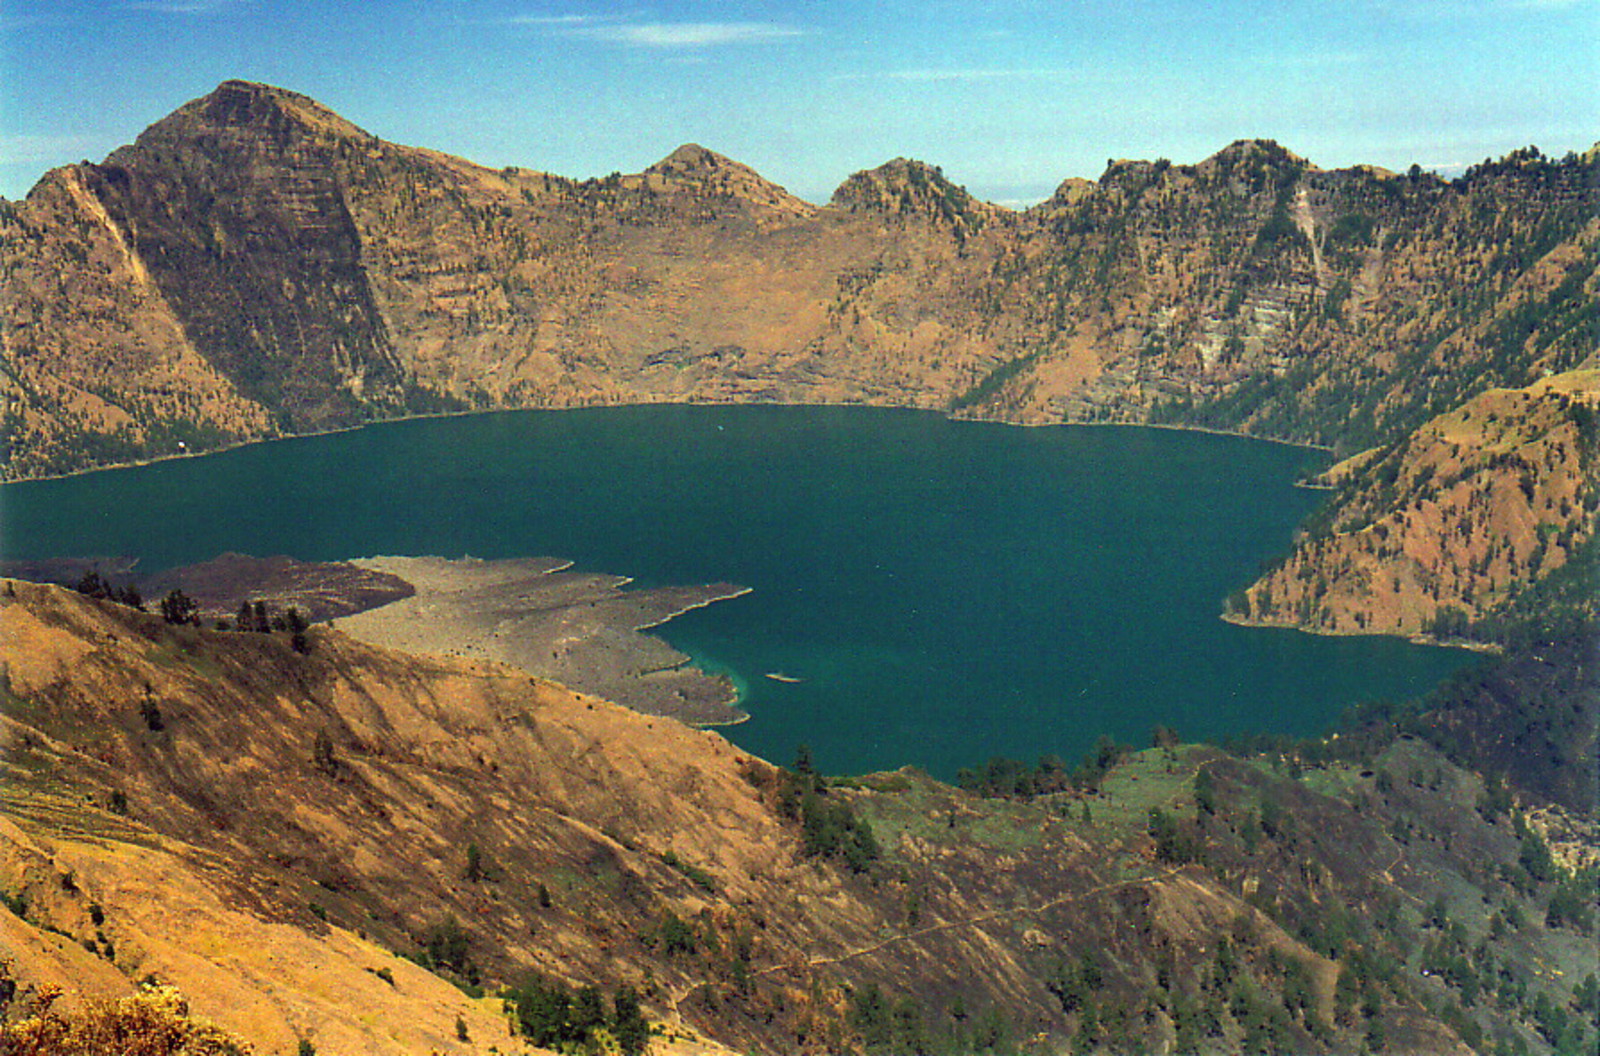 The main crater, Gunung Rinjani